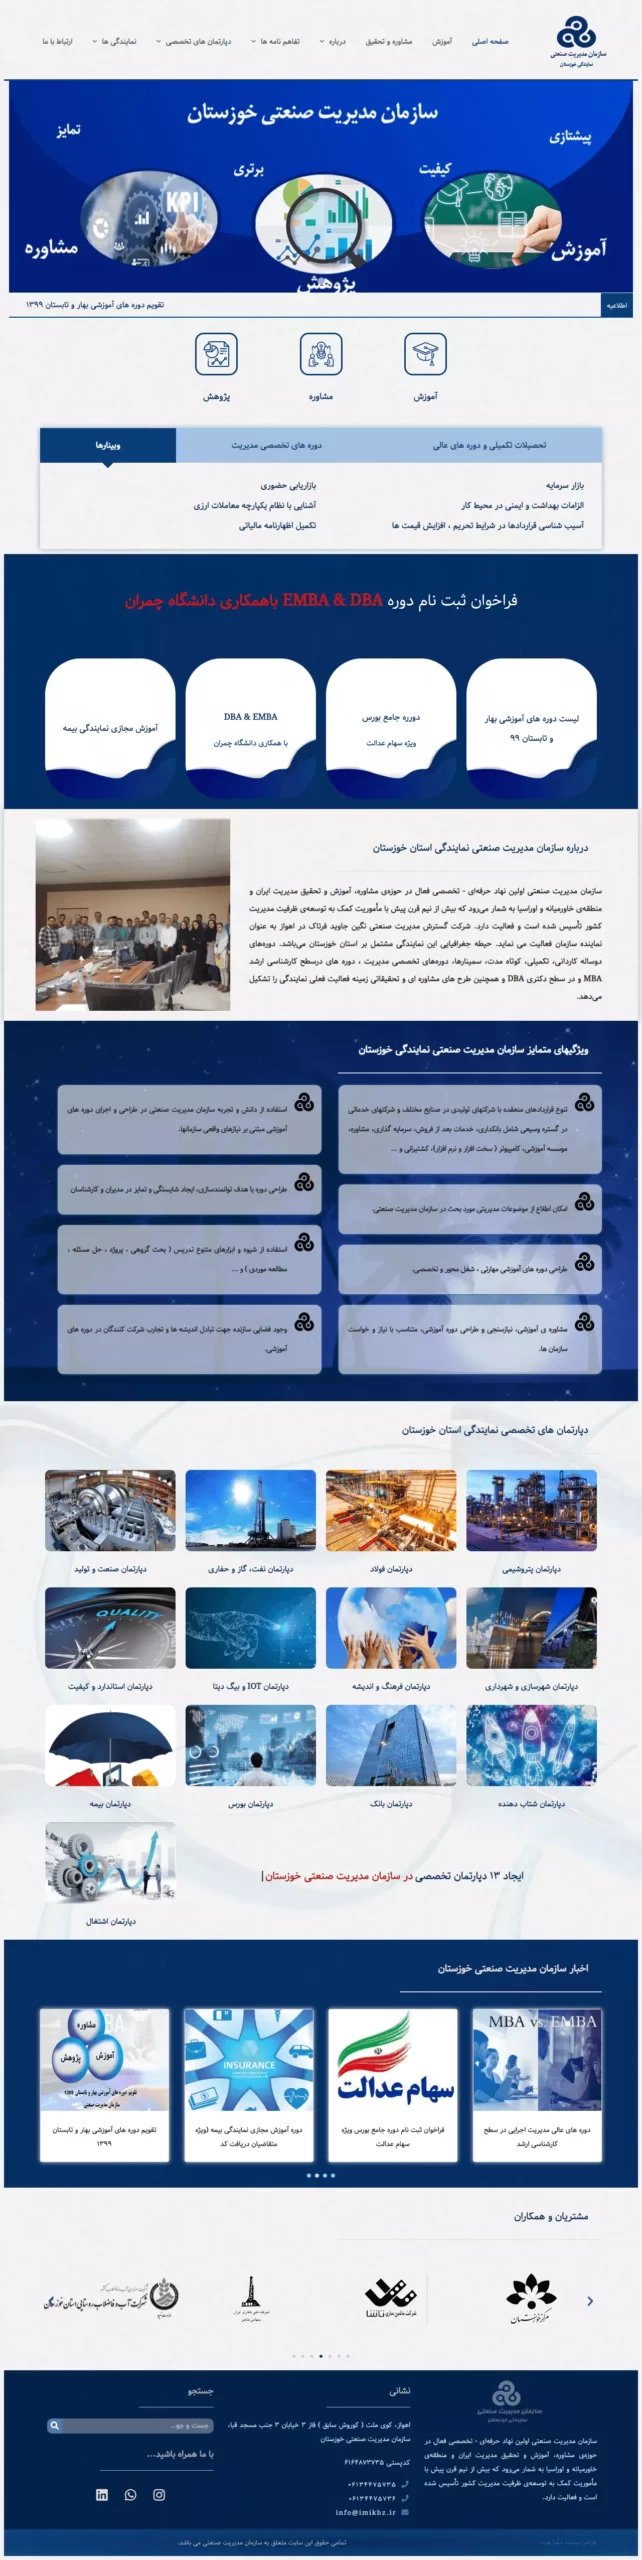 طراحی وبسایت شرکتی - آموزشی سازمان مدیریت صنعتی استان خوزستان - مریم لرکی - ایلیا وب